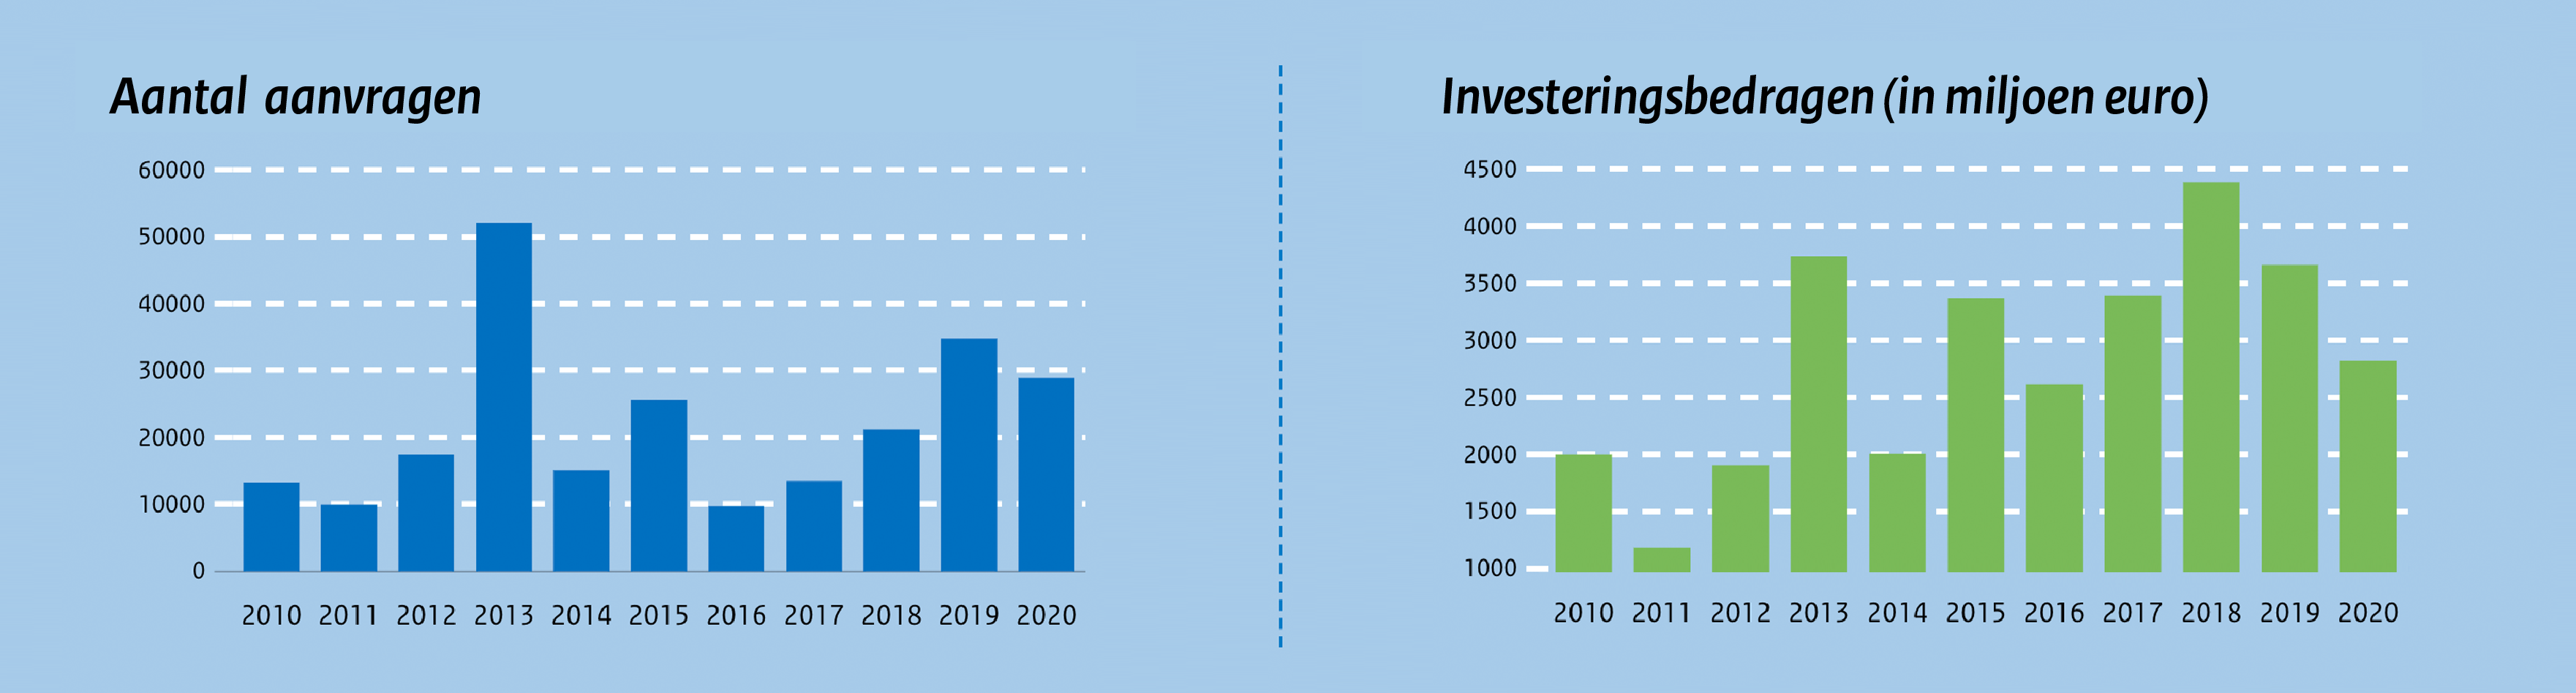 Aantal aanvragen en investeringsbedragen per jaar (2010 t/m 2020)